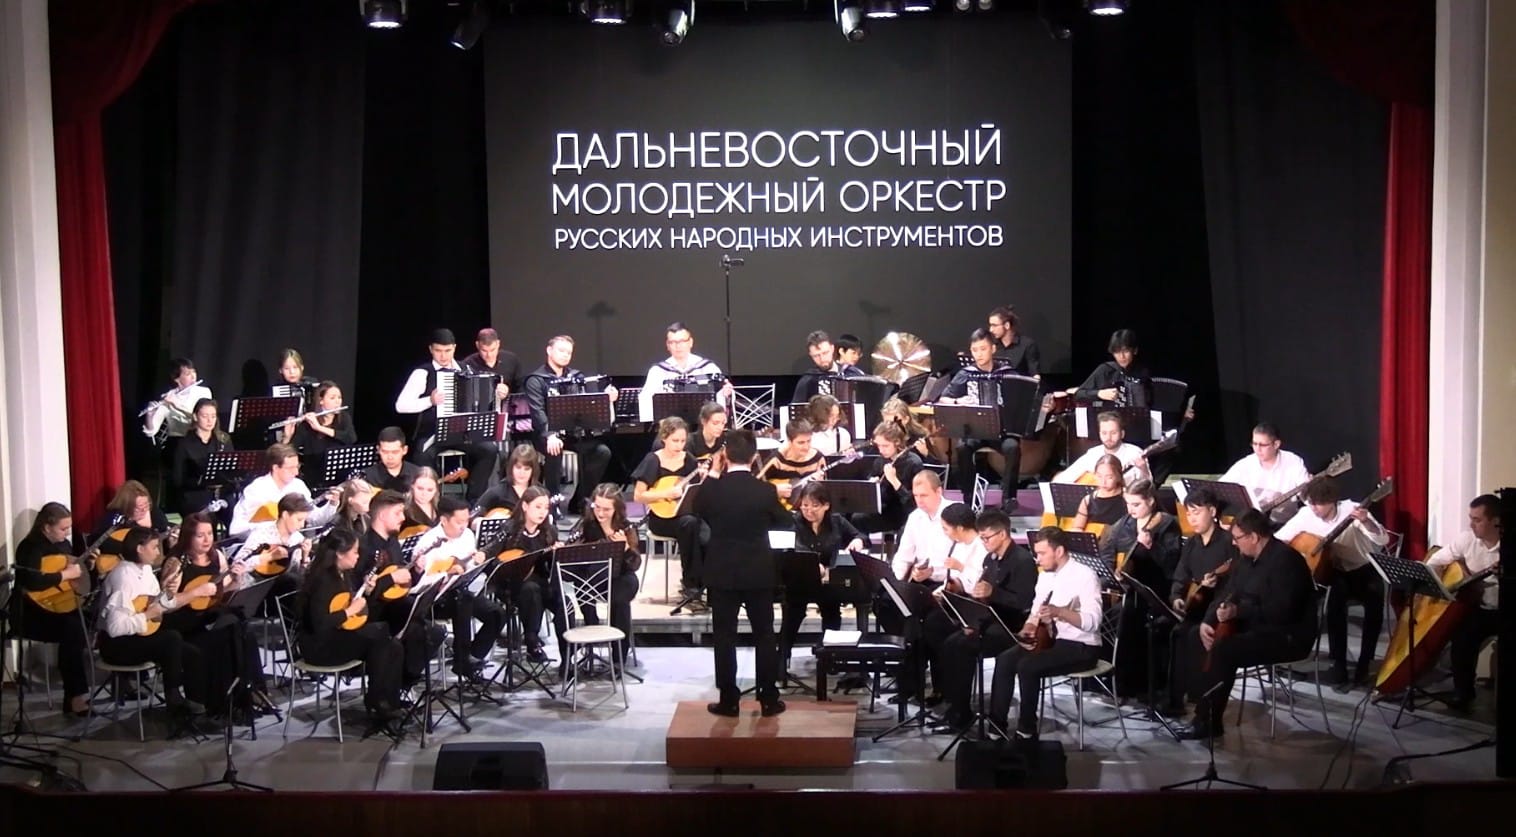 В декабре в Якутии выступит Дальневосточный молодежный оркестр русских народных инструментов